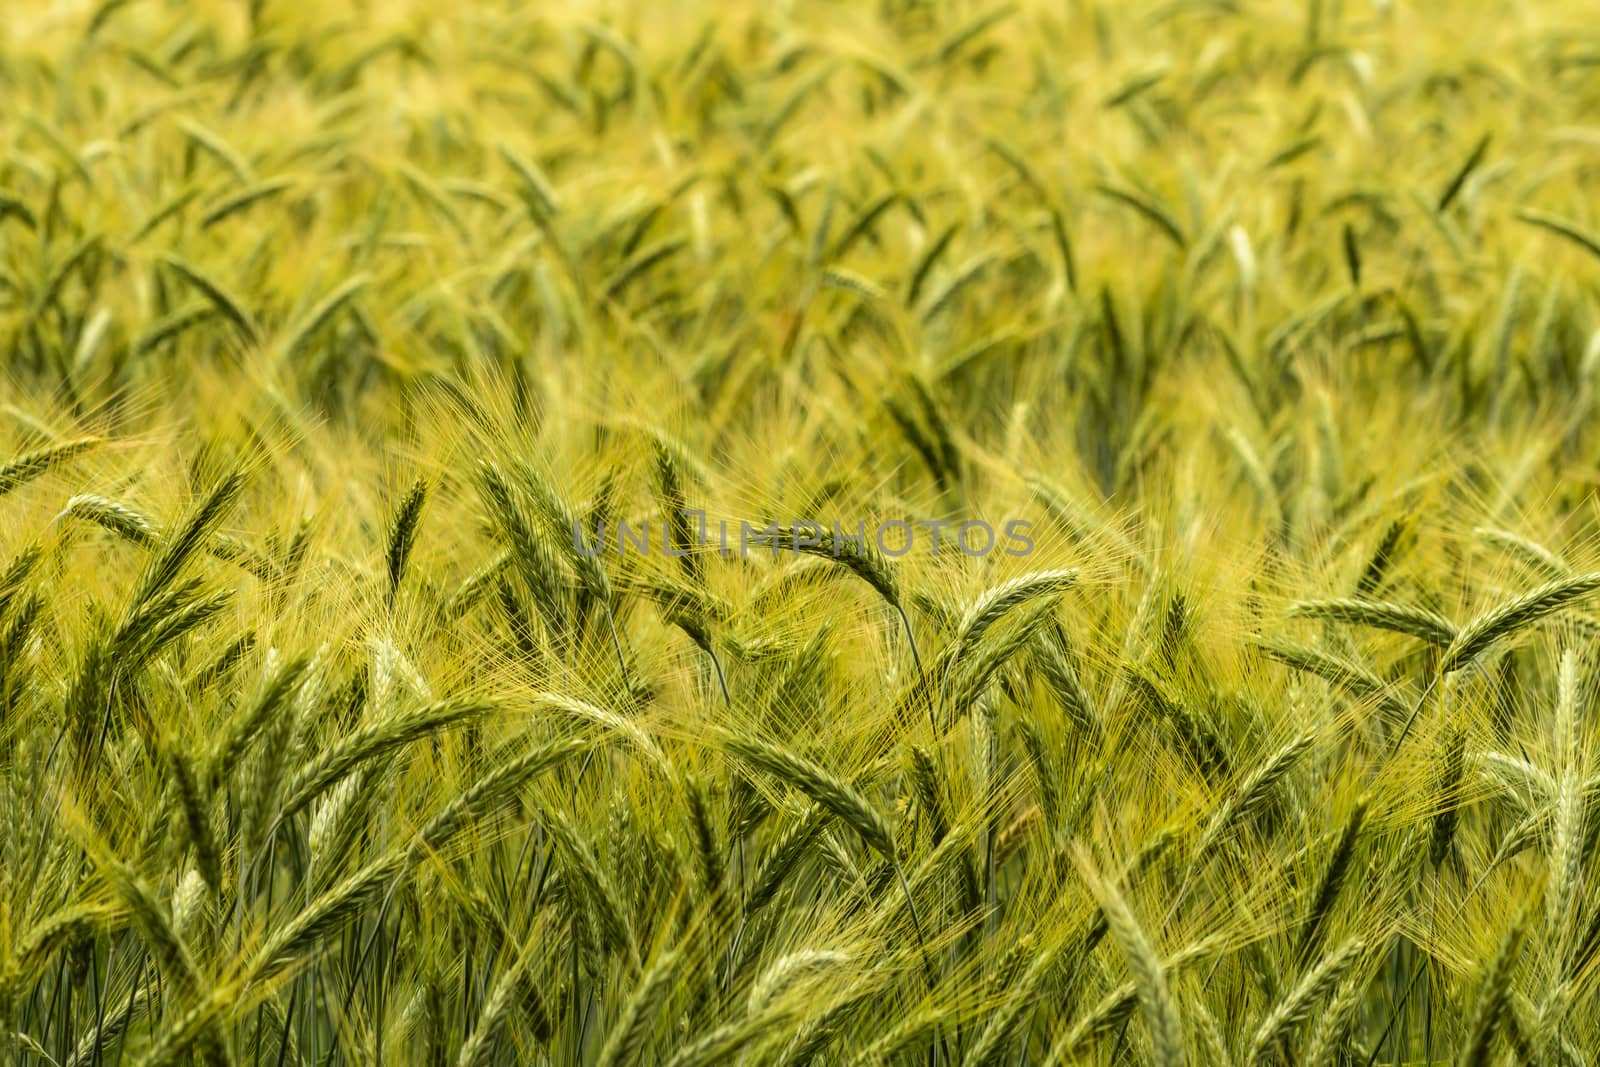 Barley in the field, crop field by asafaric